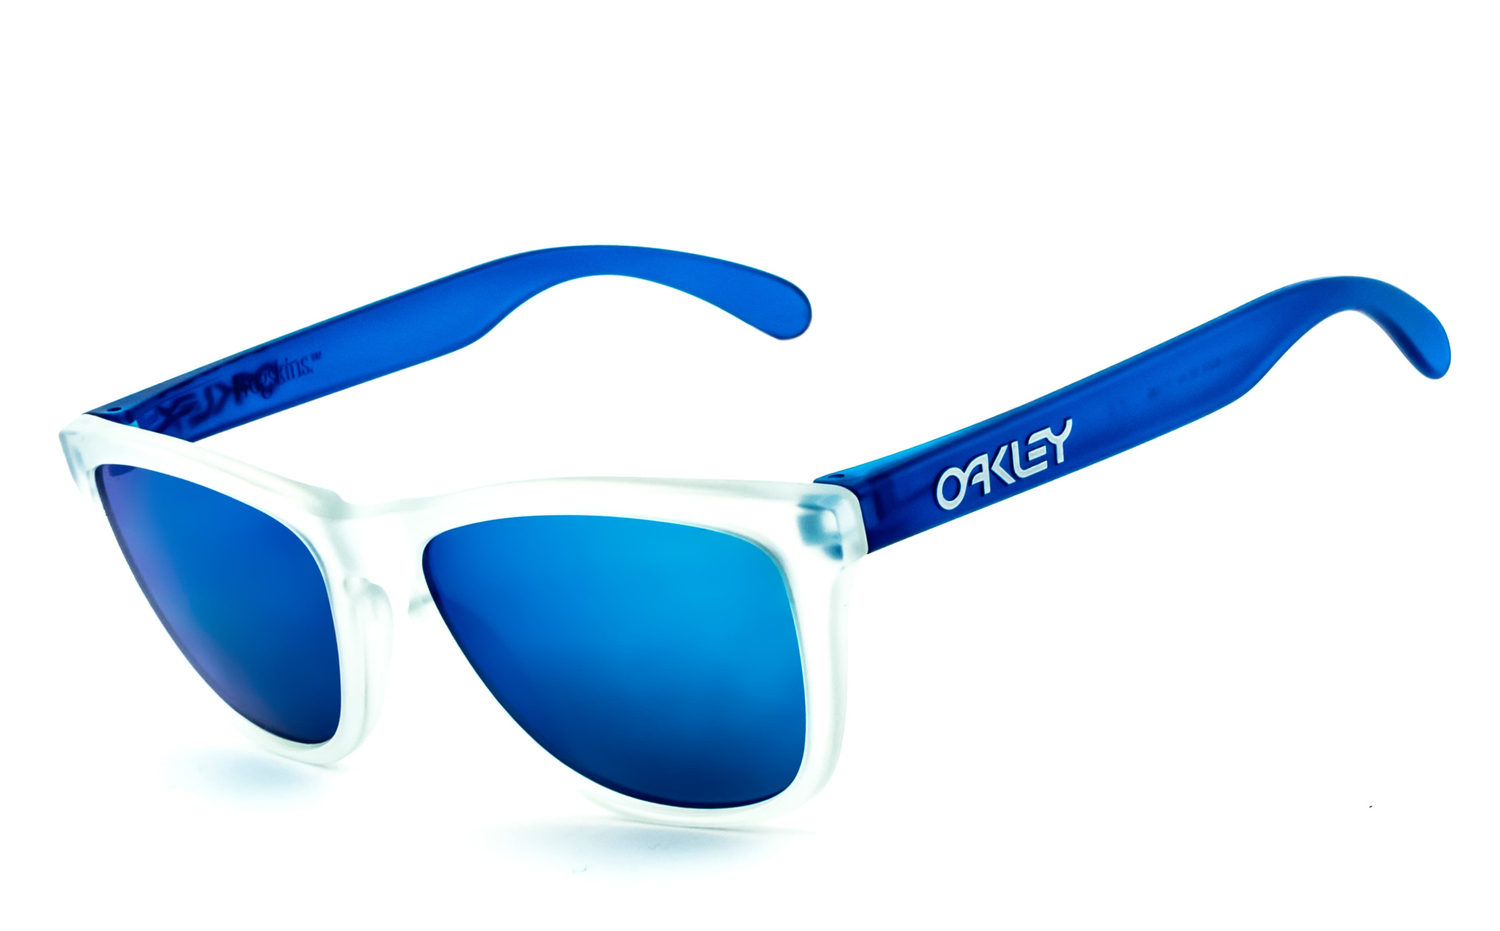 OAKLEY | Frogskins - OO9013  Sportbrille, Fahrradbrille, Sonnenbrille, Bikerbrille, Radbrille, UV400 Schutzfilter